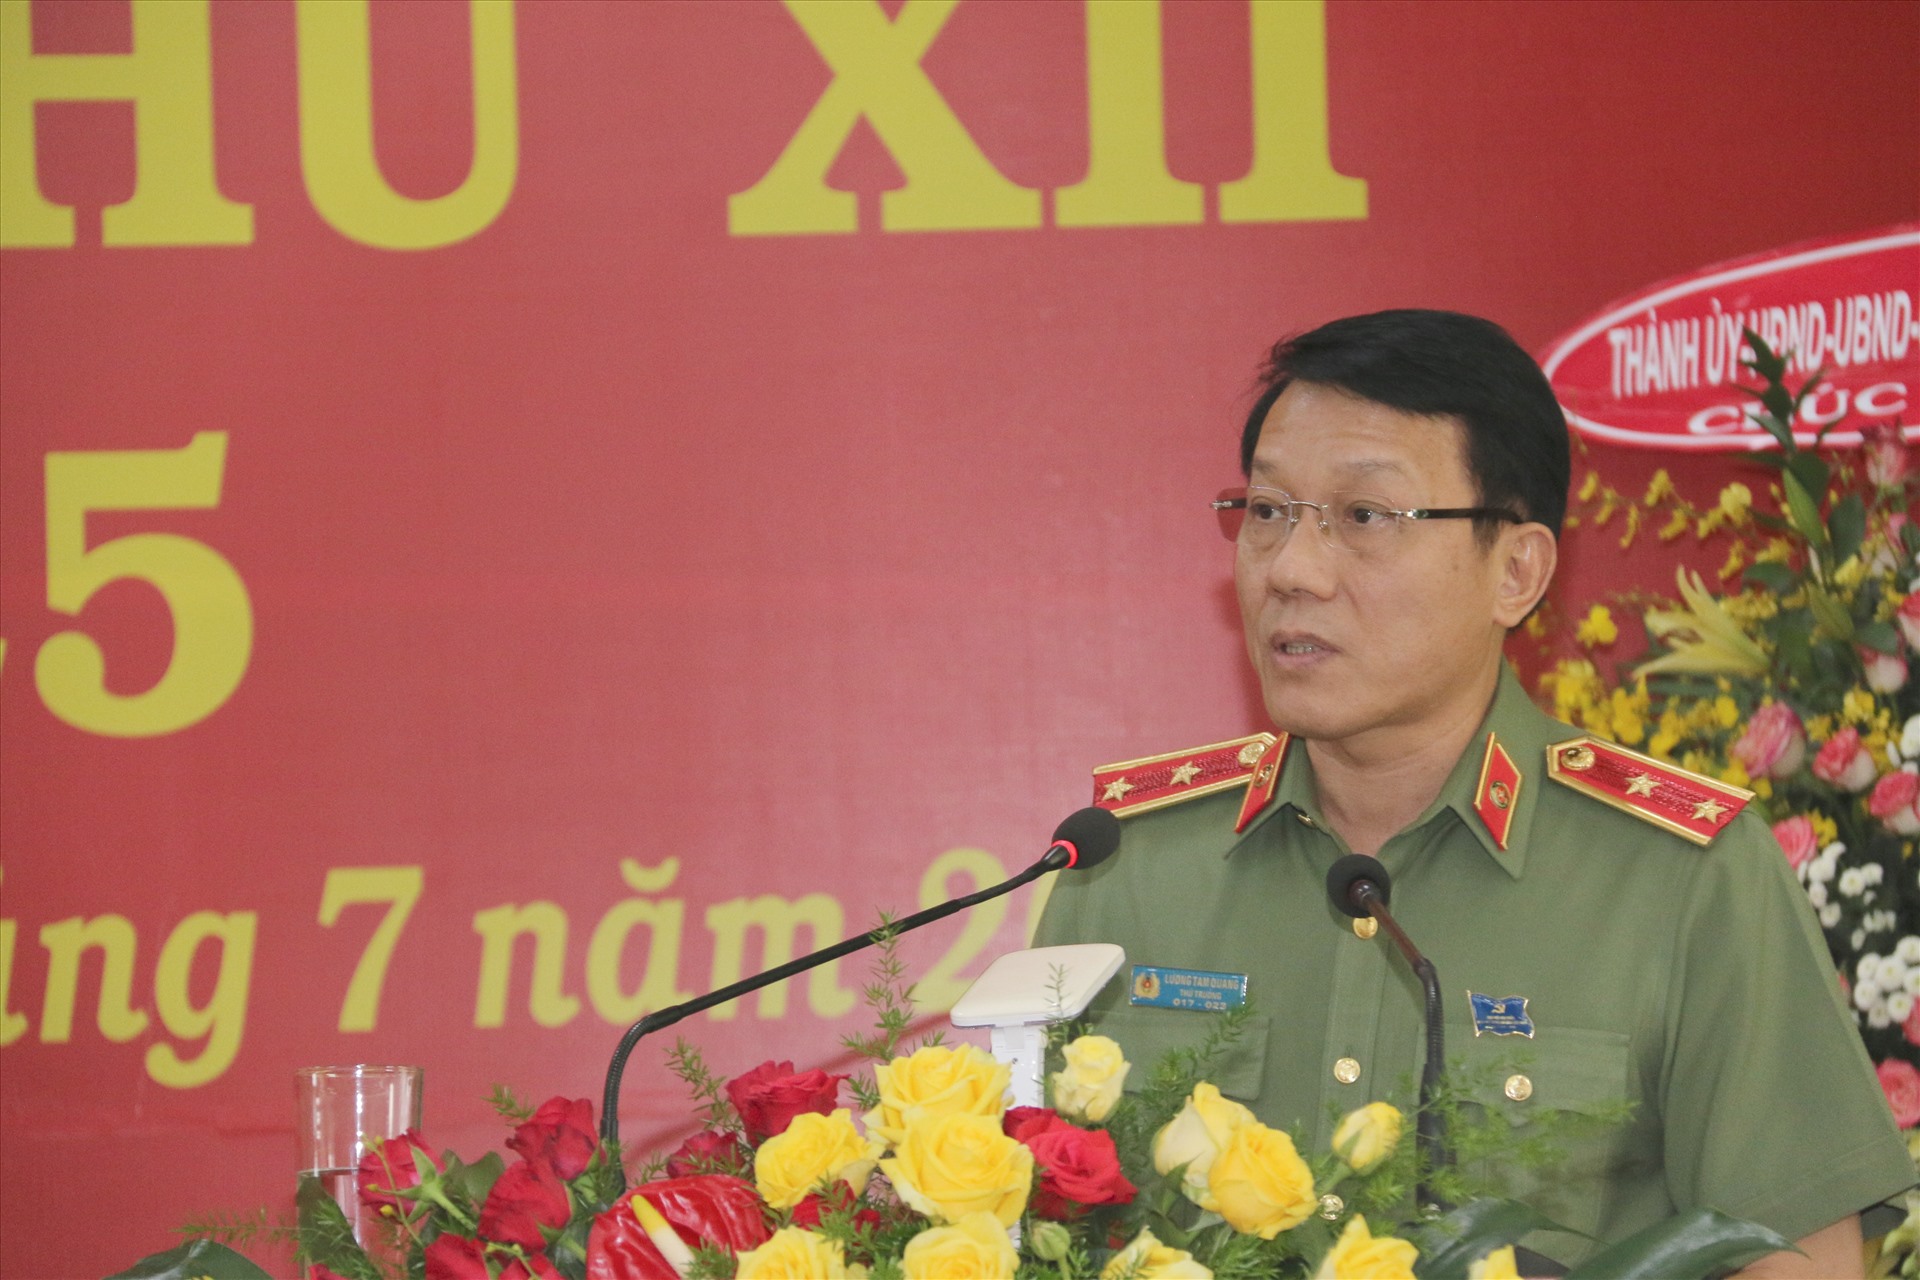 Trung tướng Lương Tam Quang, Thứ trưởng Bộ Công an, phát biểu chỉ đạo tại đại hội. Ảnh: P.V.